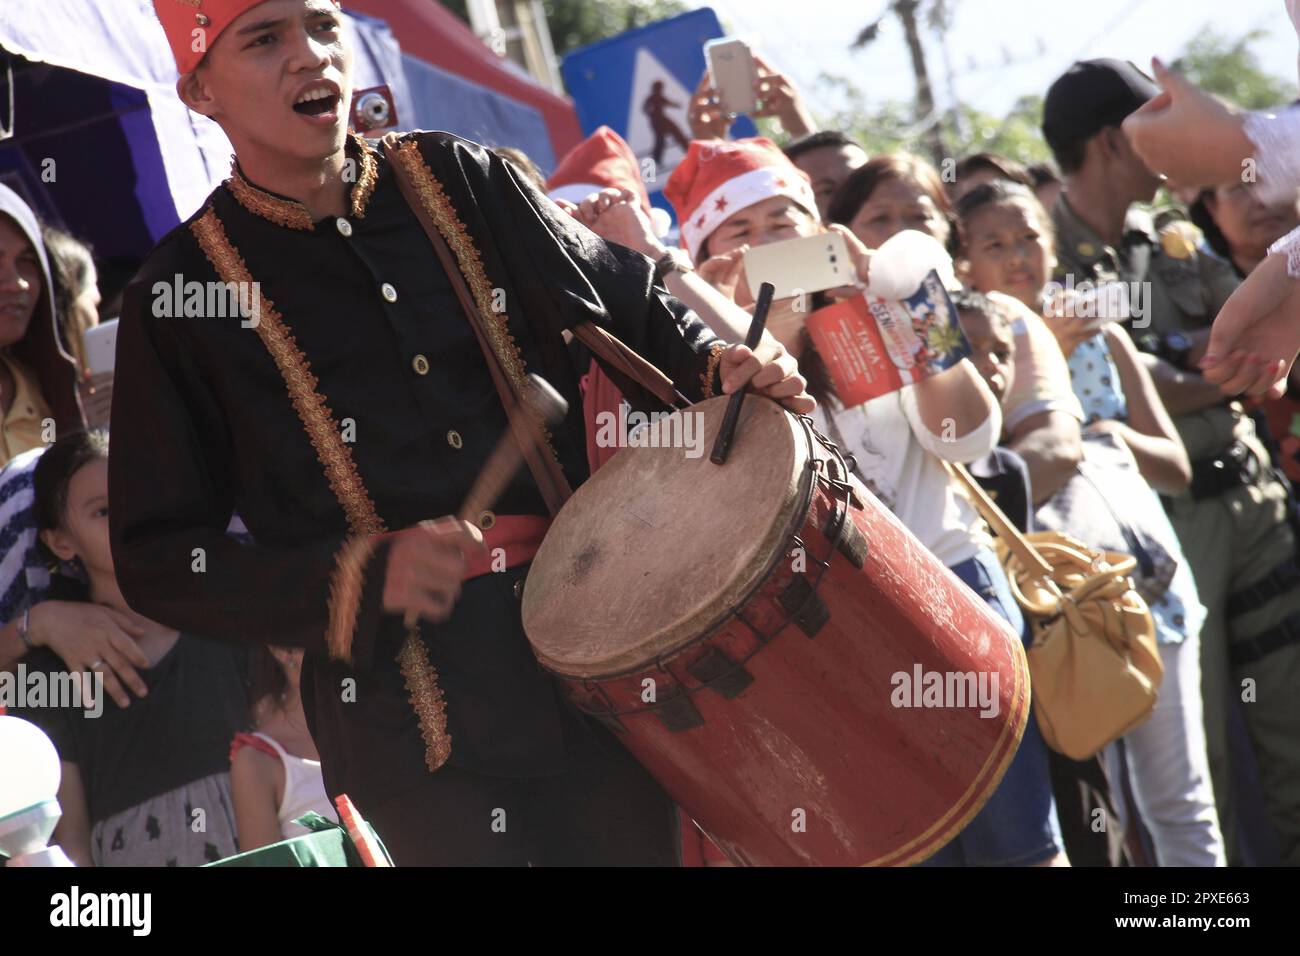 Maengket-Tanz beim Festival, ein traditioneller Tanz der Minahasa in Indonesien Stockfoto